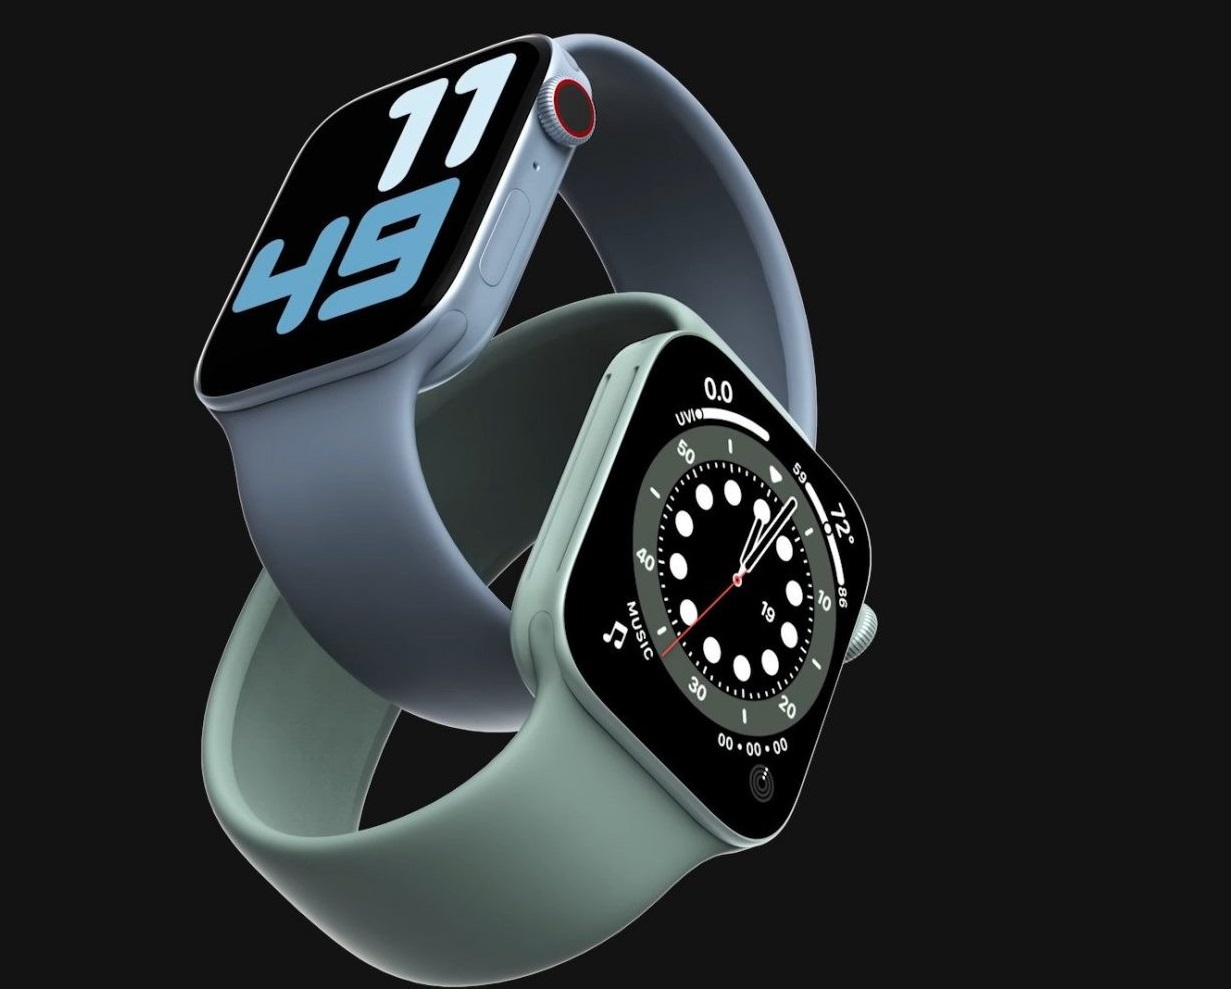 يظهر ندوة من حين اخر  تسريب يكشف تصميم ساعة أبل الجديدة Apple Watch Series 7